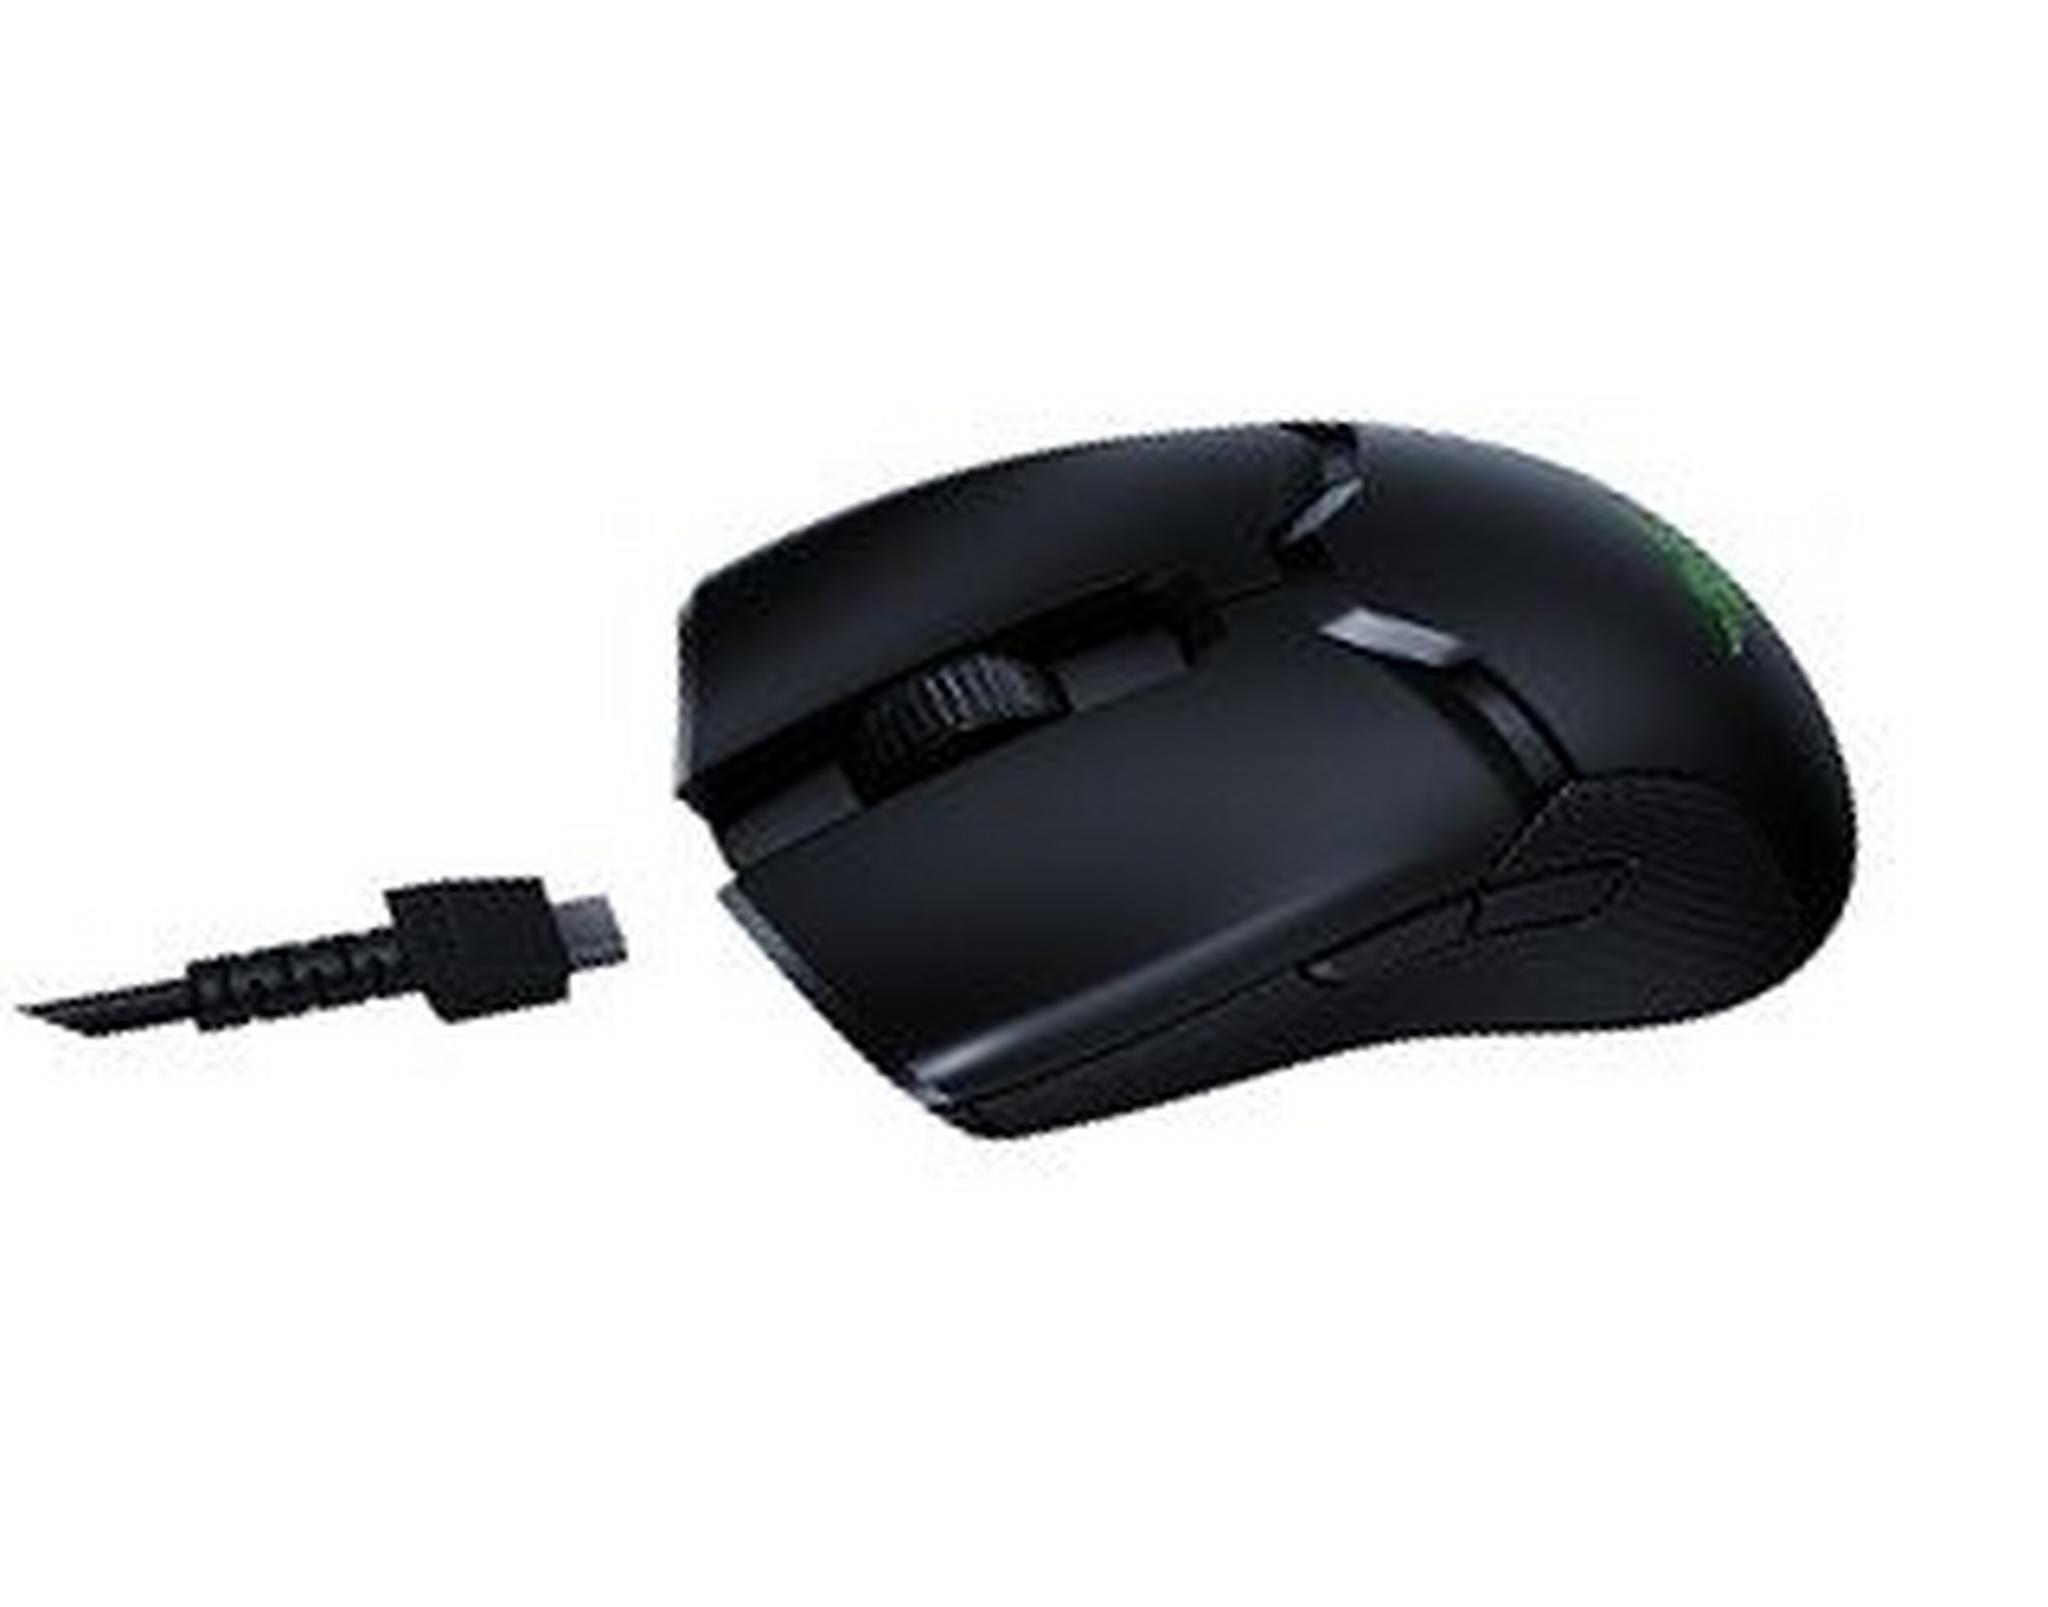 Razer Viper Ultimate Wireless Mouse